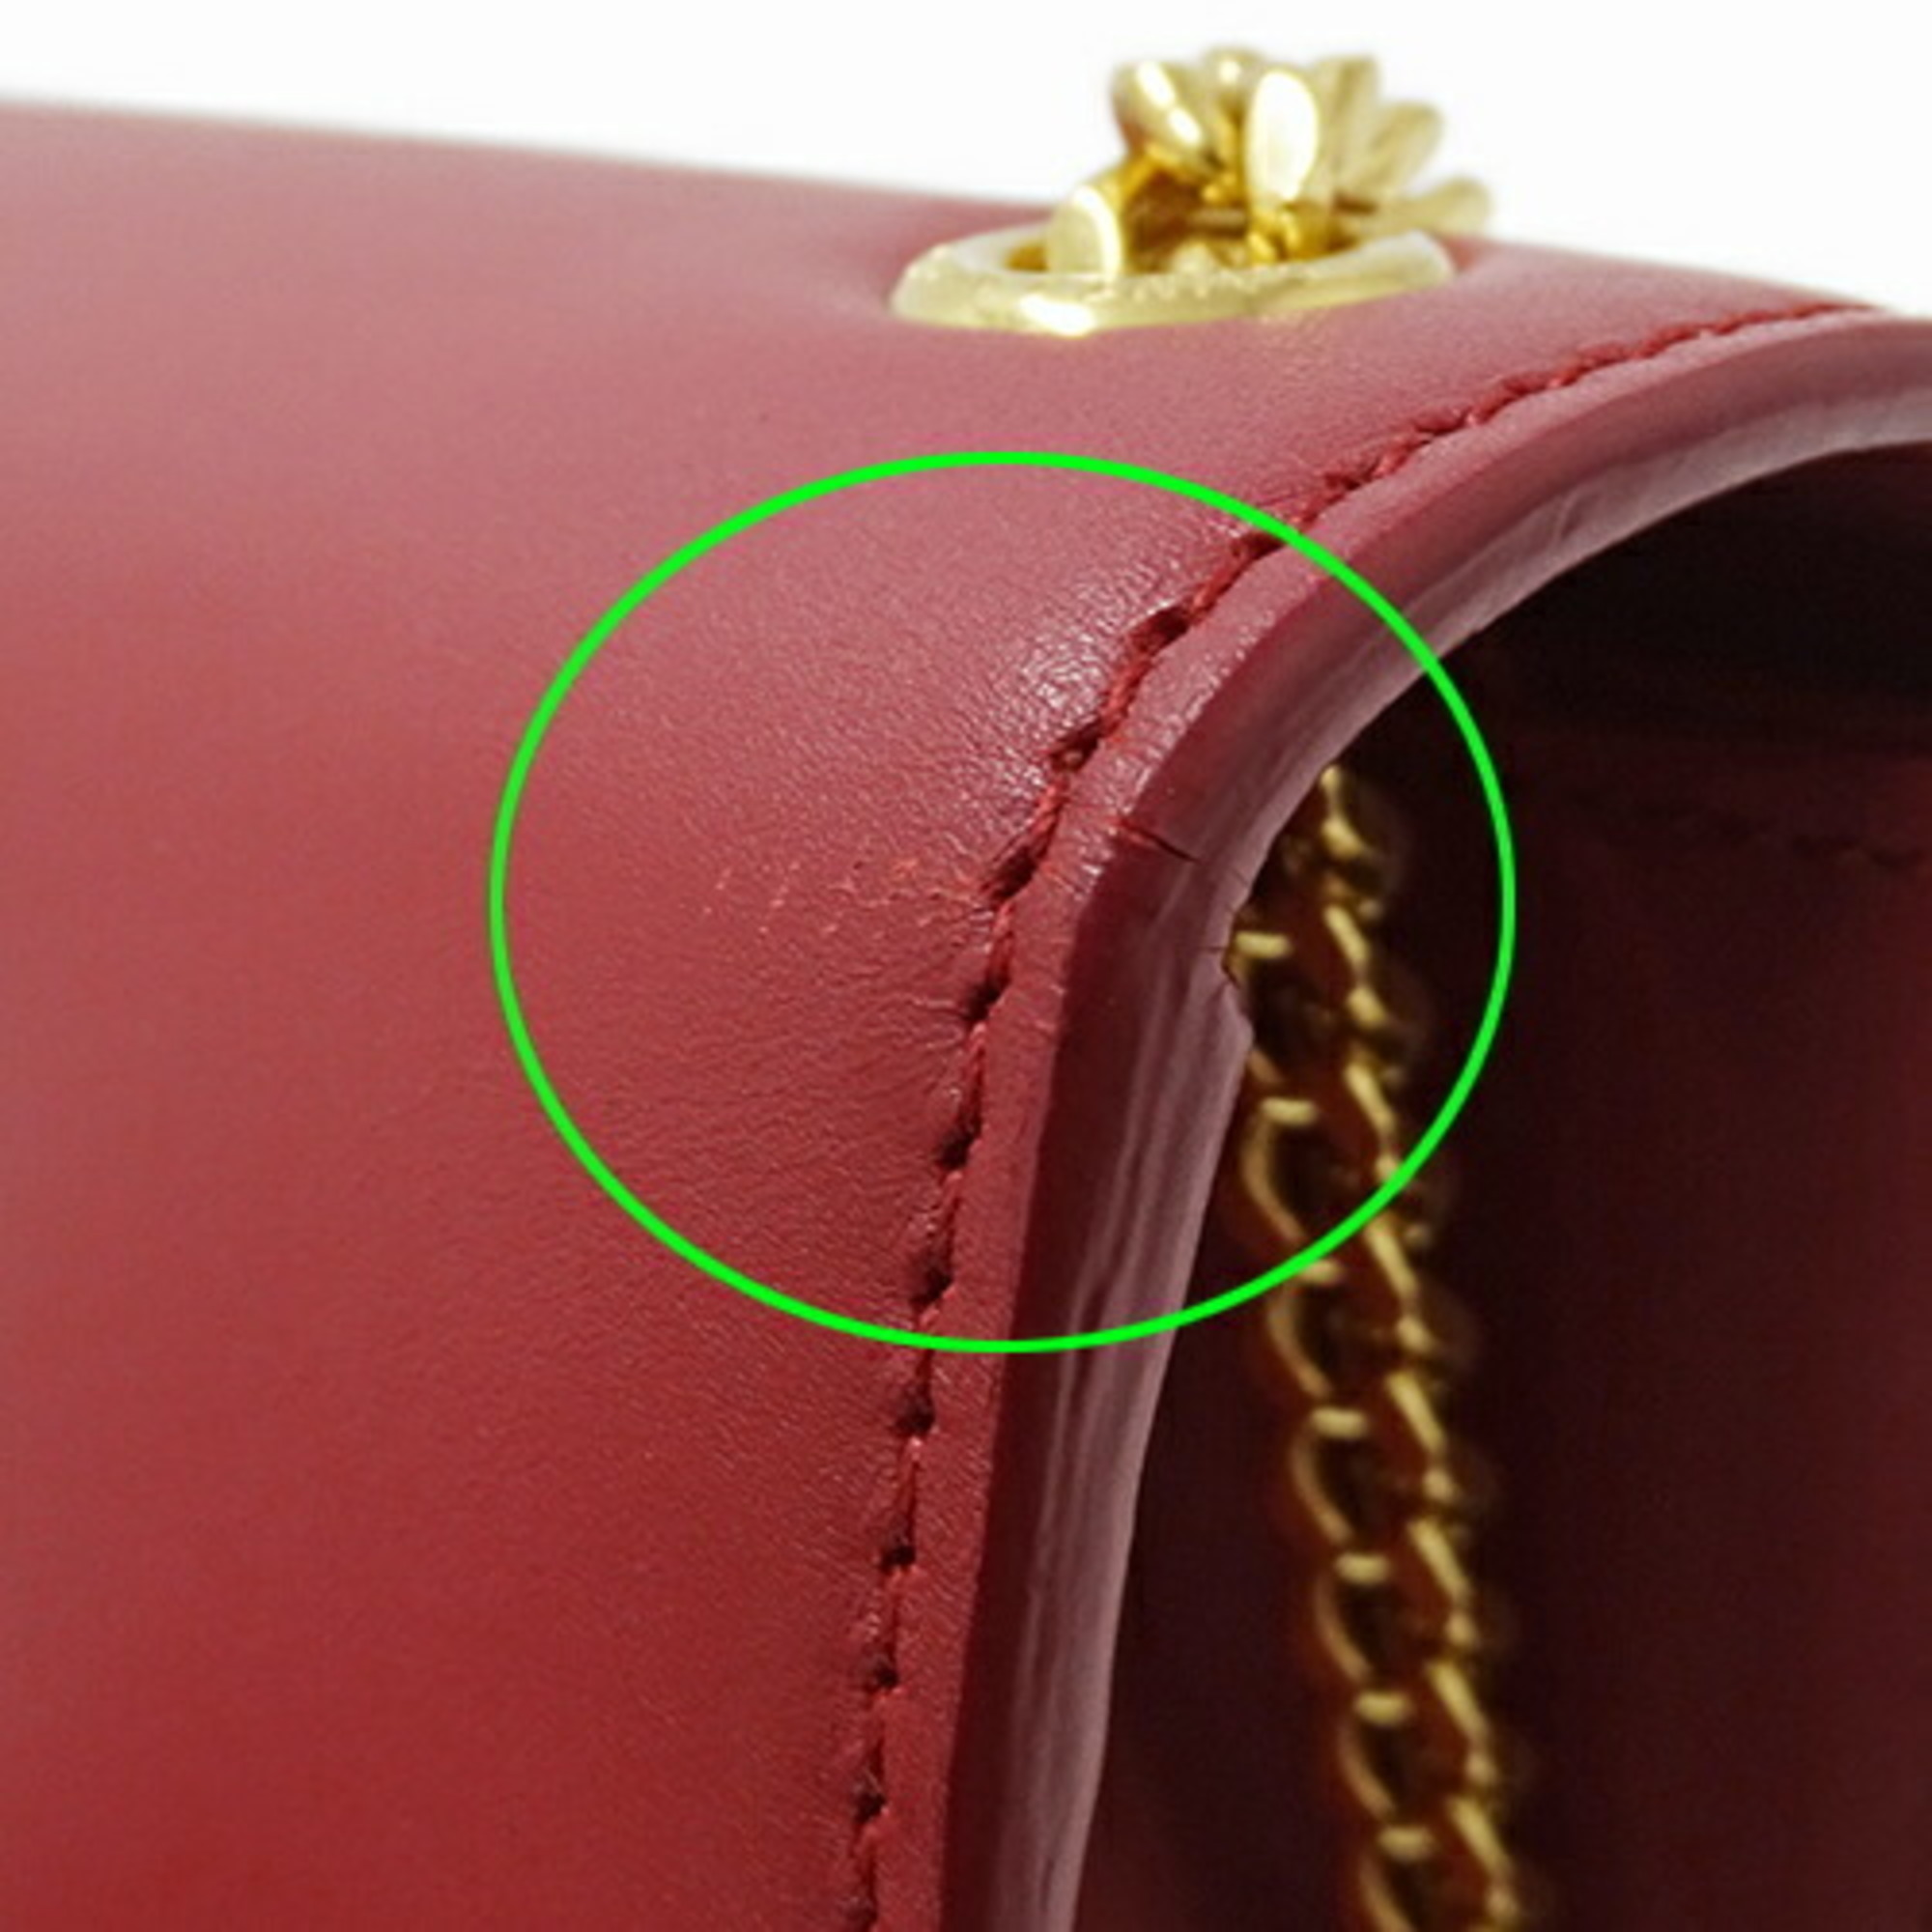 Saint Laurent SAINT LAURENT Bag Women's Shoulder Classic Kate Calf Leather Red 354119 Tassel Chain Compact